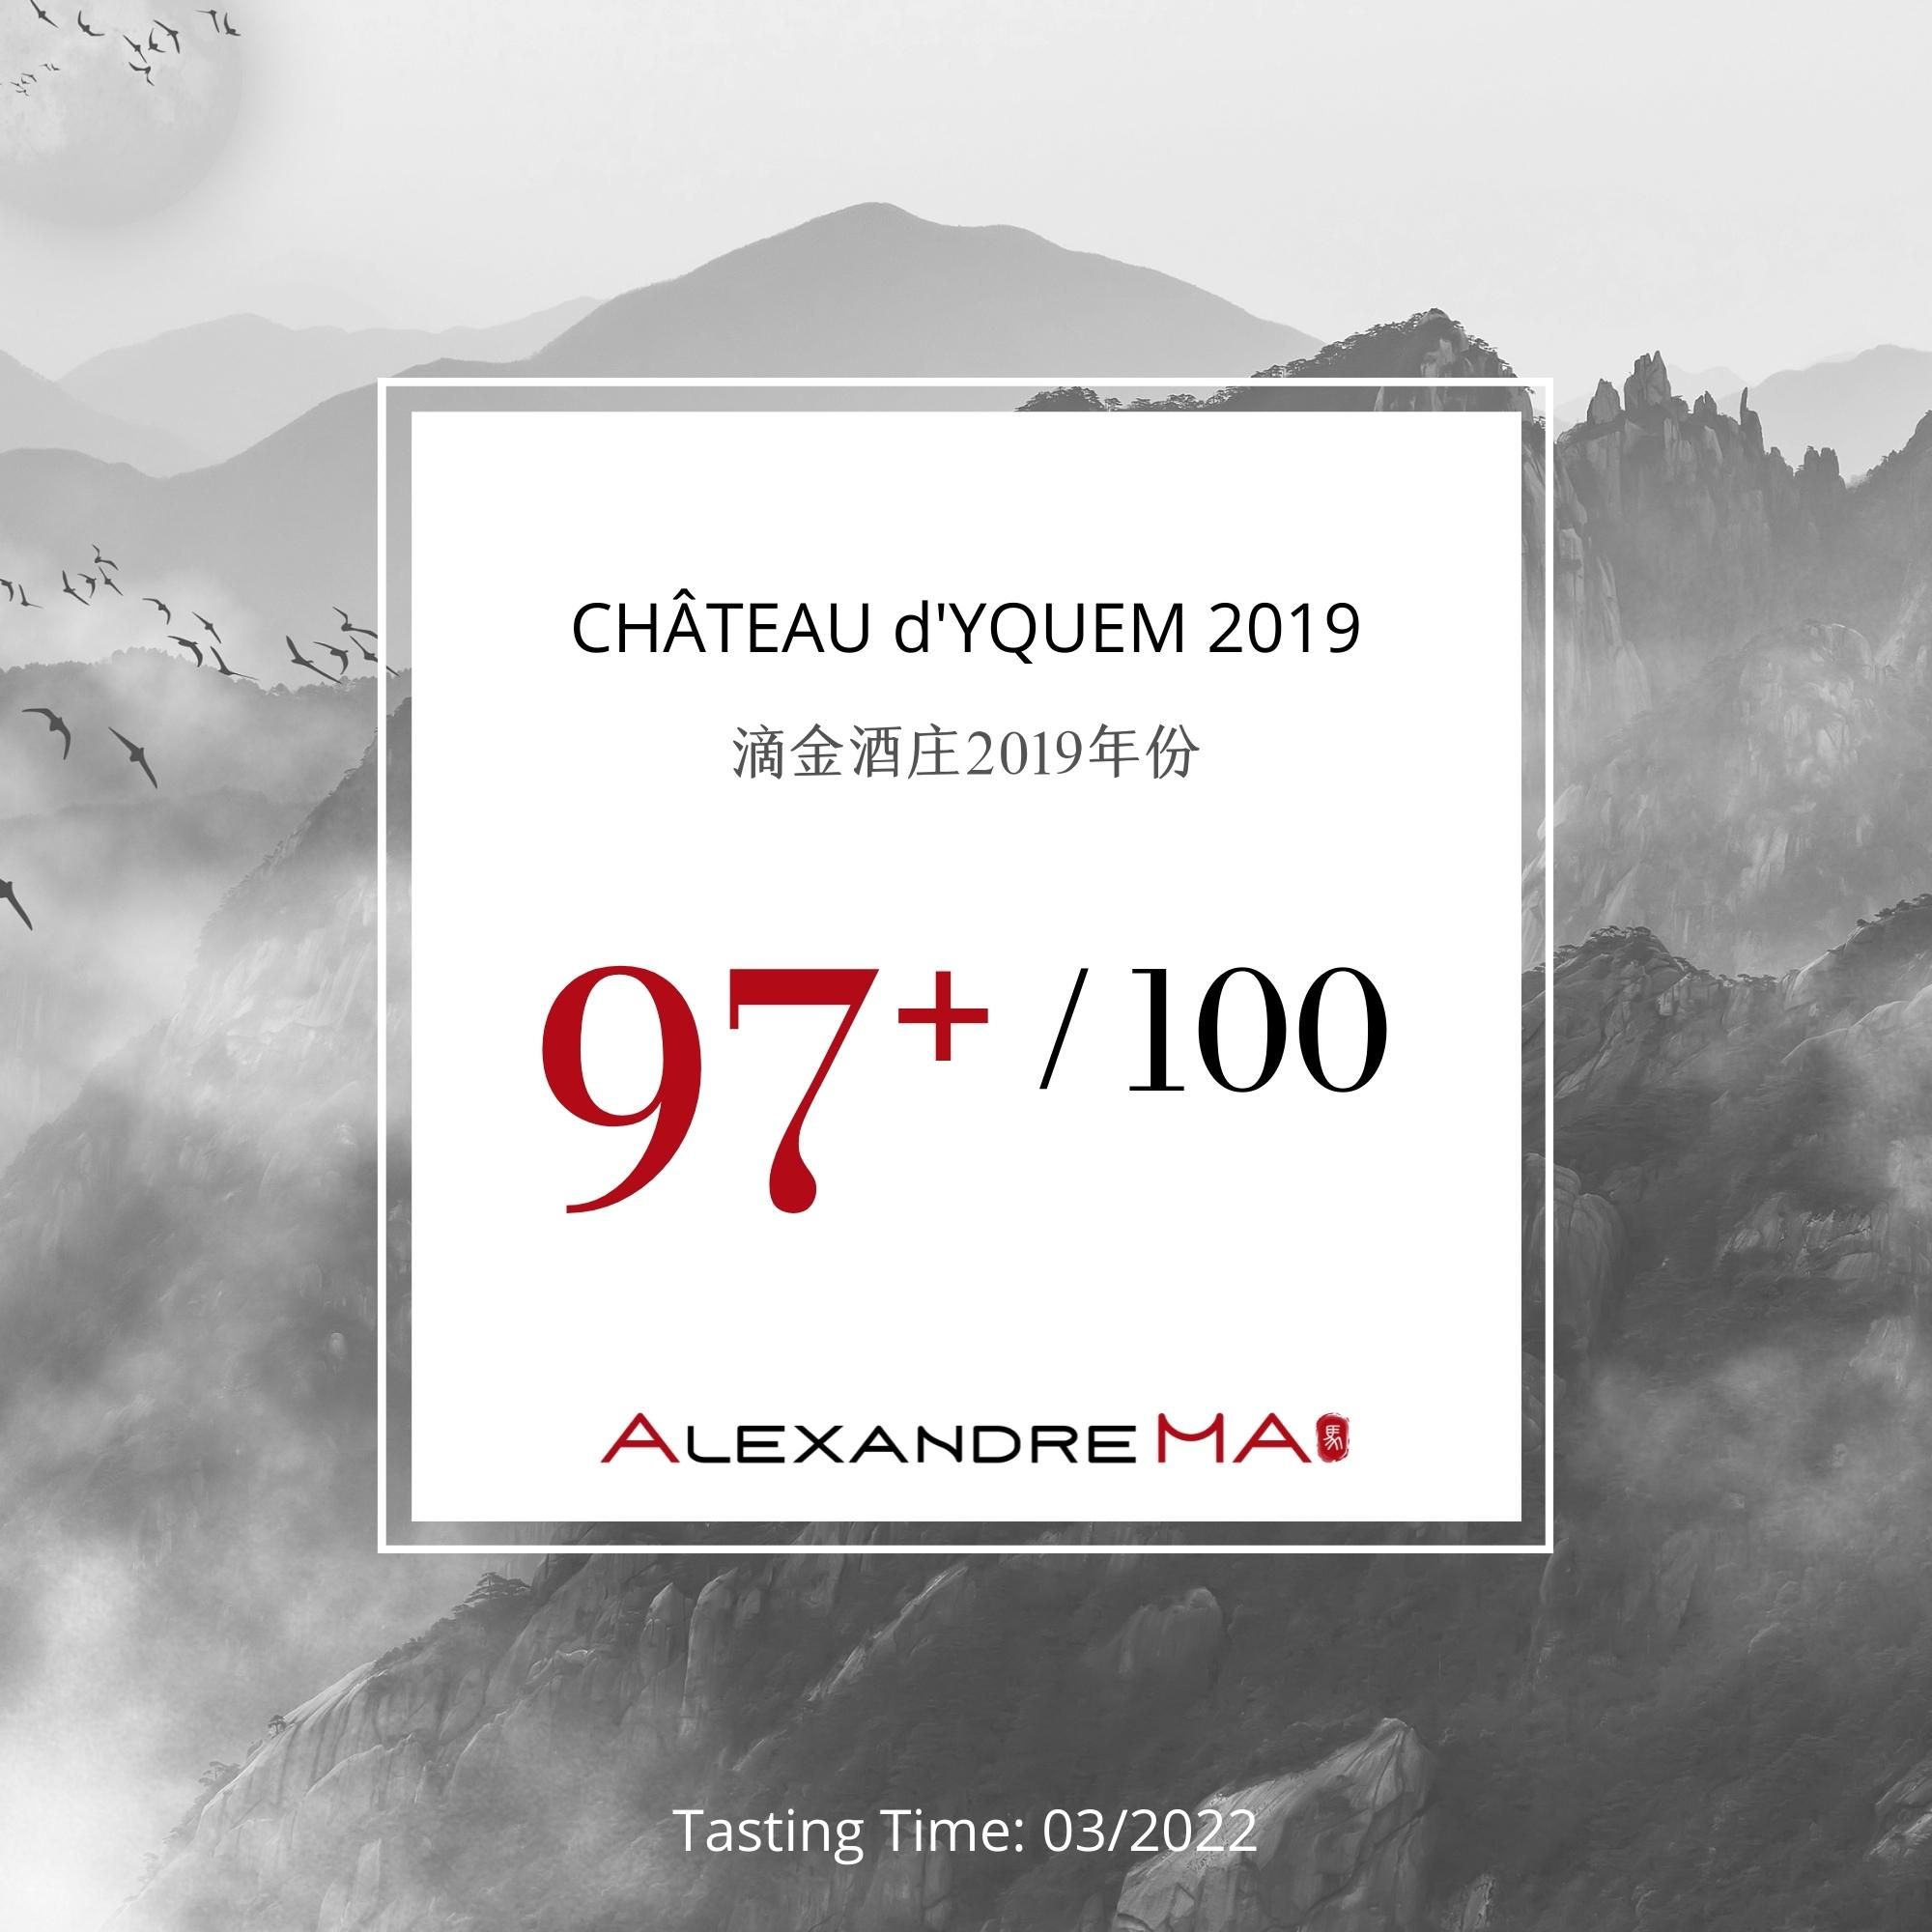 Château d’Yquem 2019 - Alexandre MA